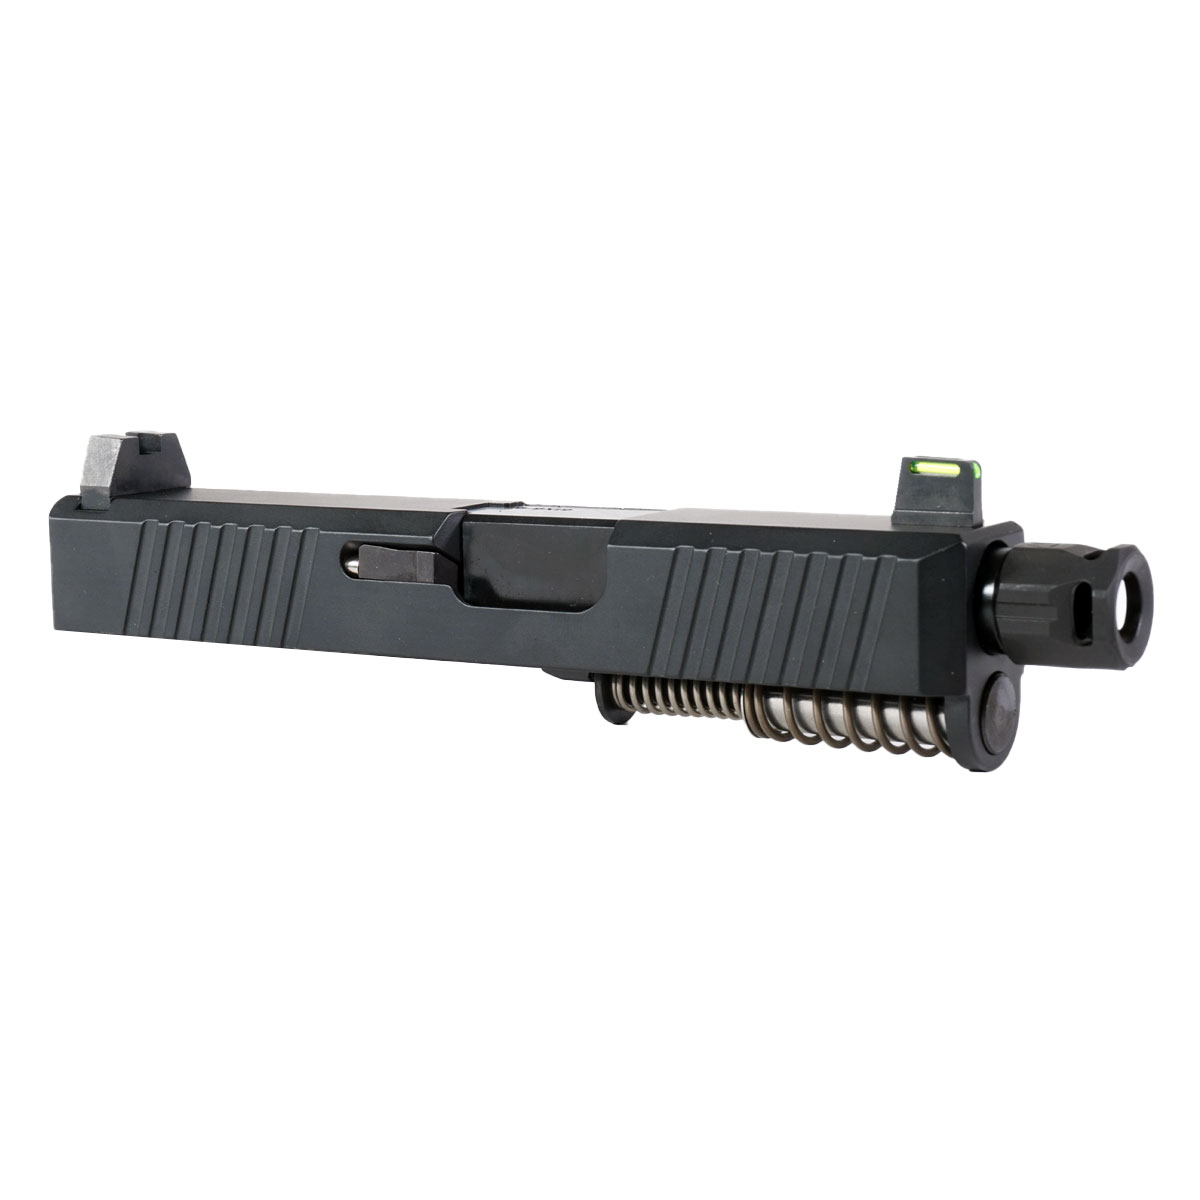 DDS 'Providence Power' 9mm Complete Slide Kit - Glock 26 Gen 1-3 Compatible